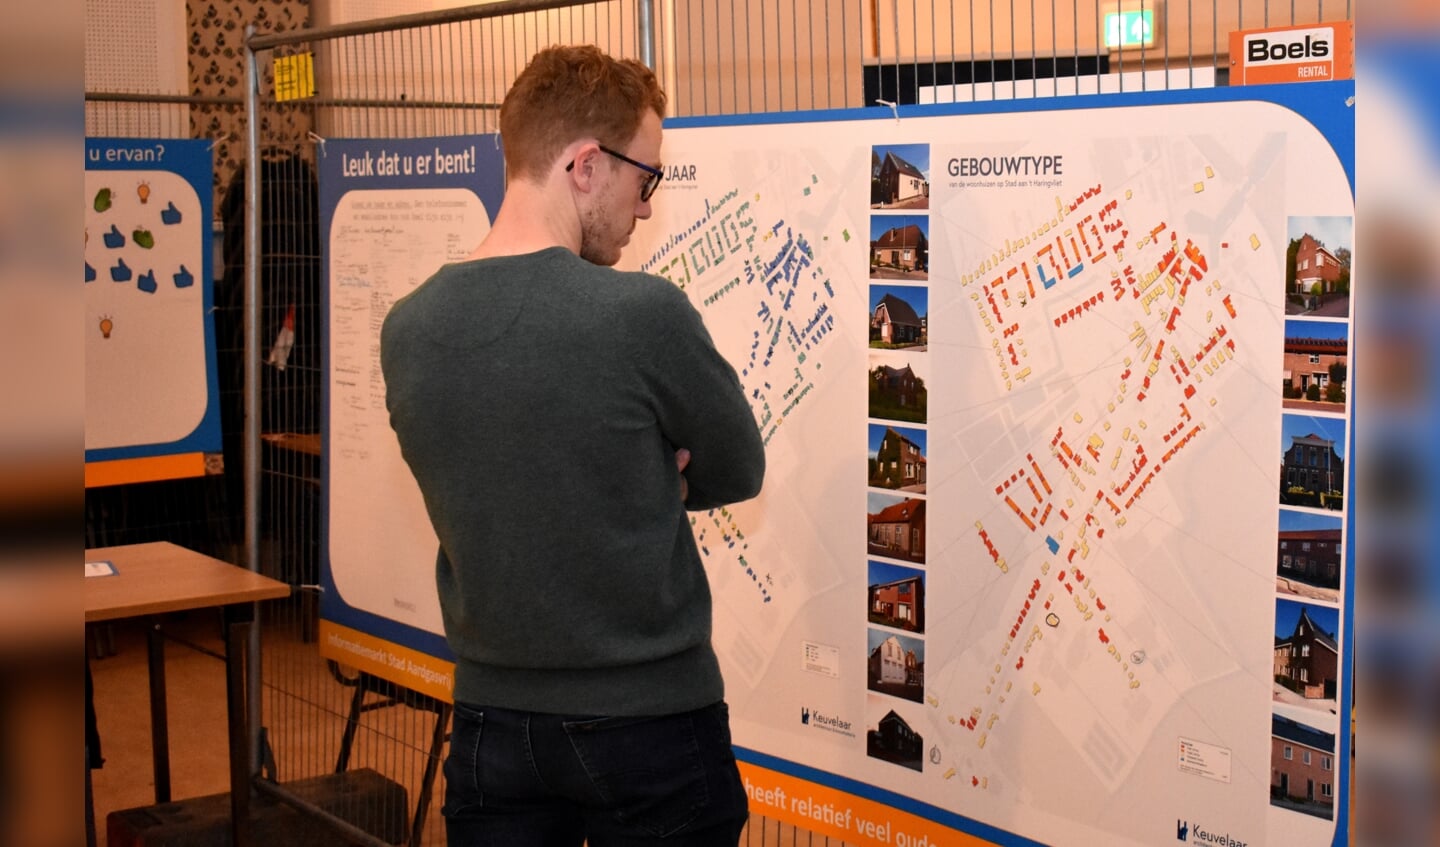 Een bezoeker bekijkt de kaart met alle gebouwen in Stad aan 't Haringvliet.